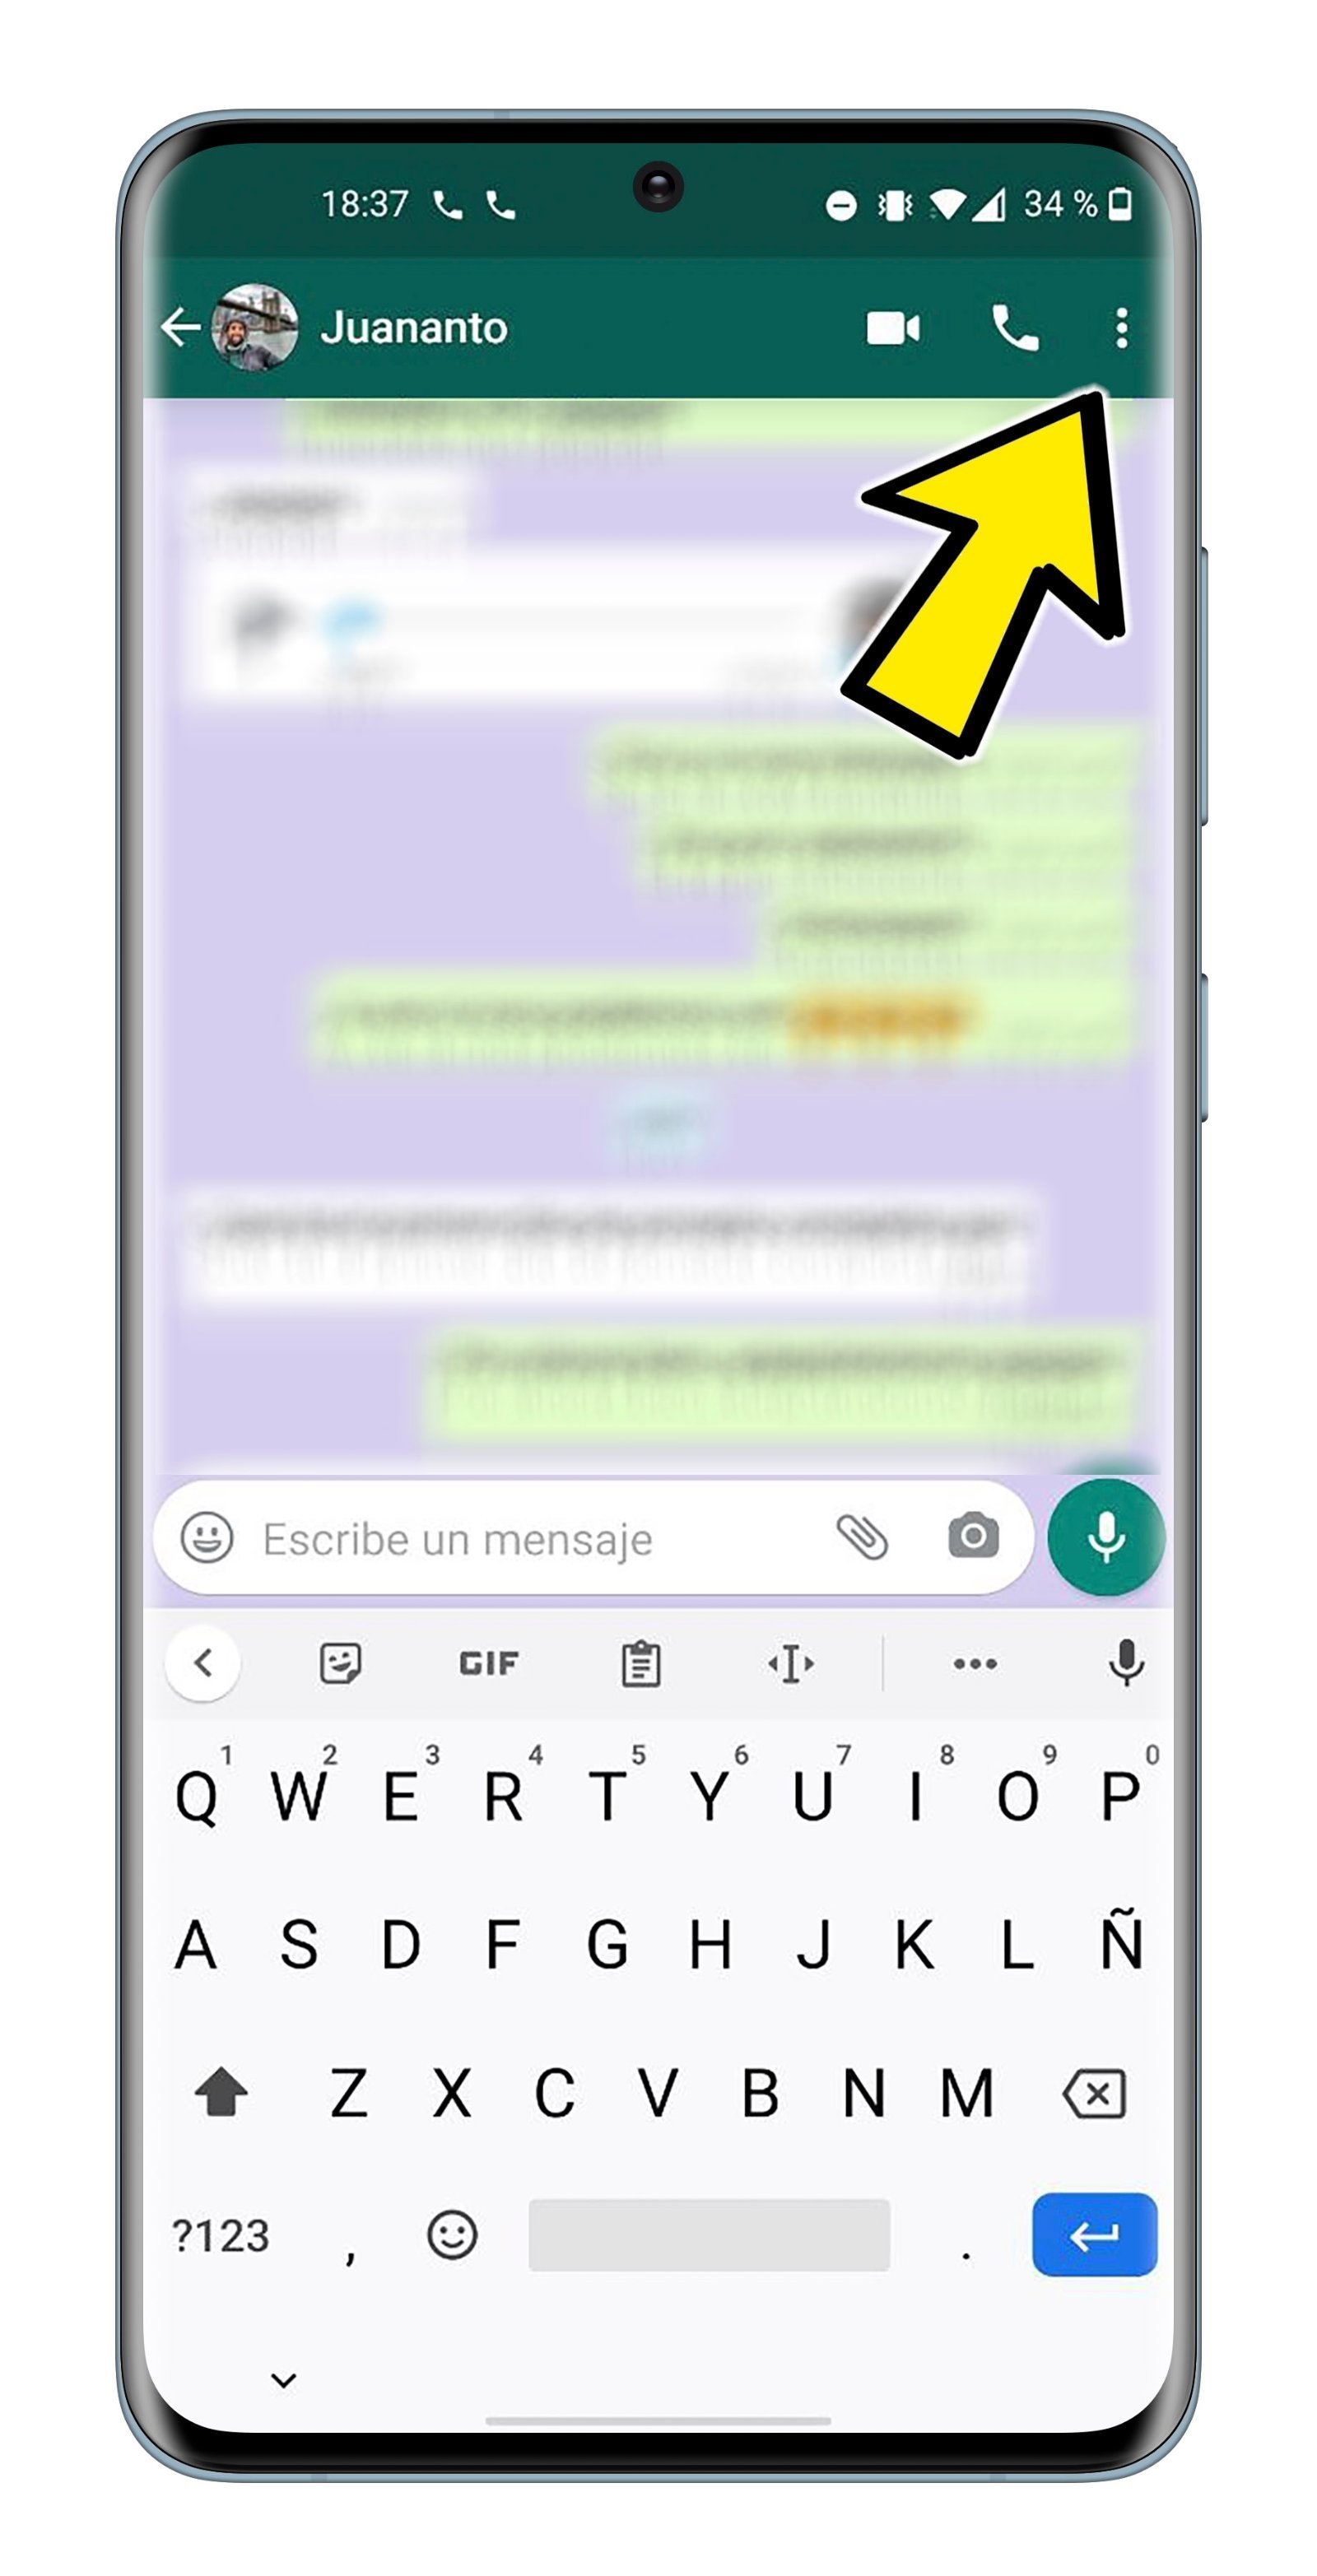 Cómo importar los chats de WhatsApp a Telegram paso a paso y sin complicaciones